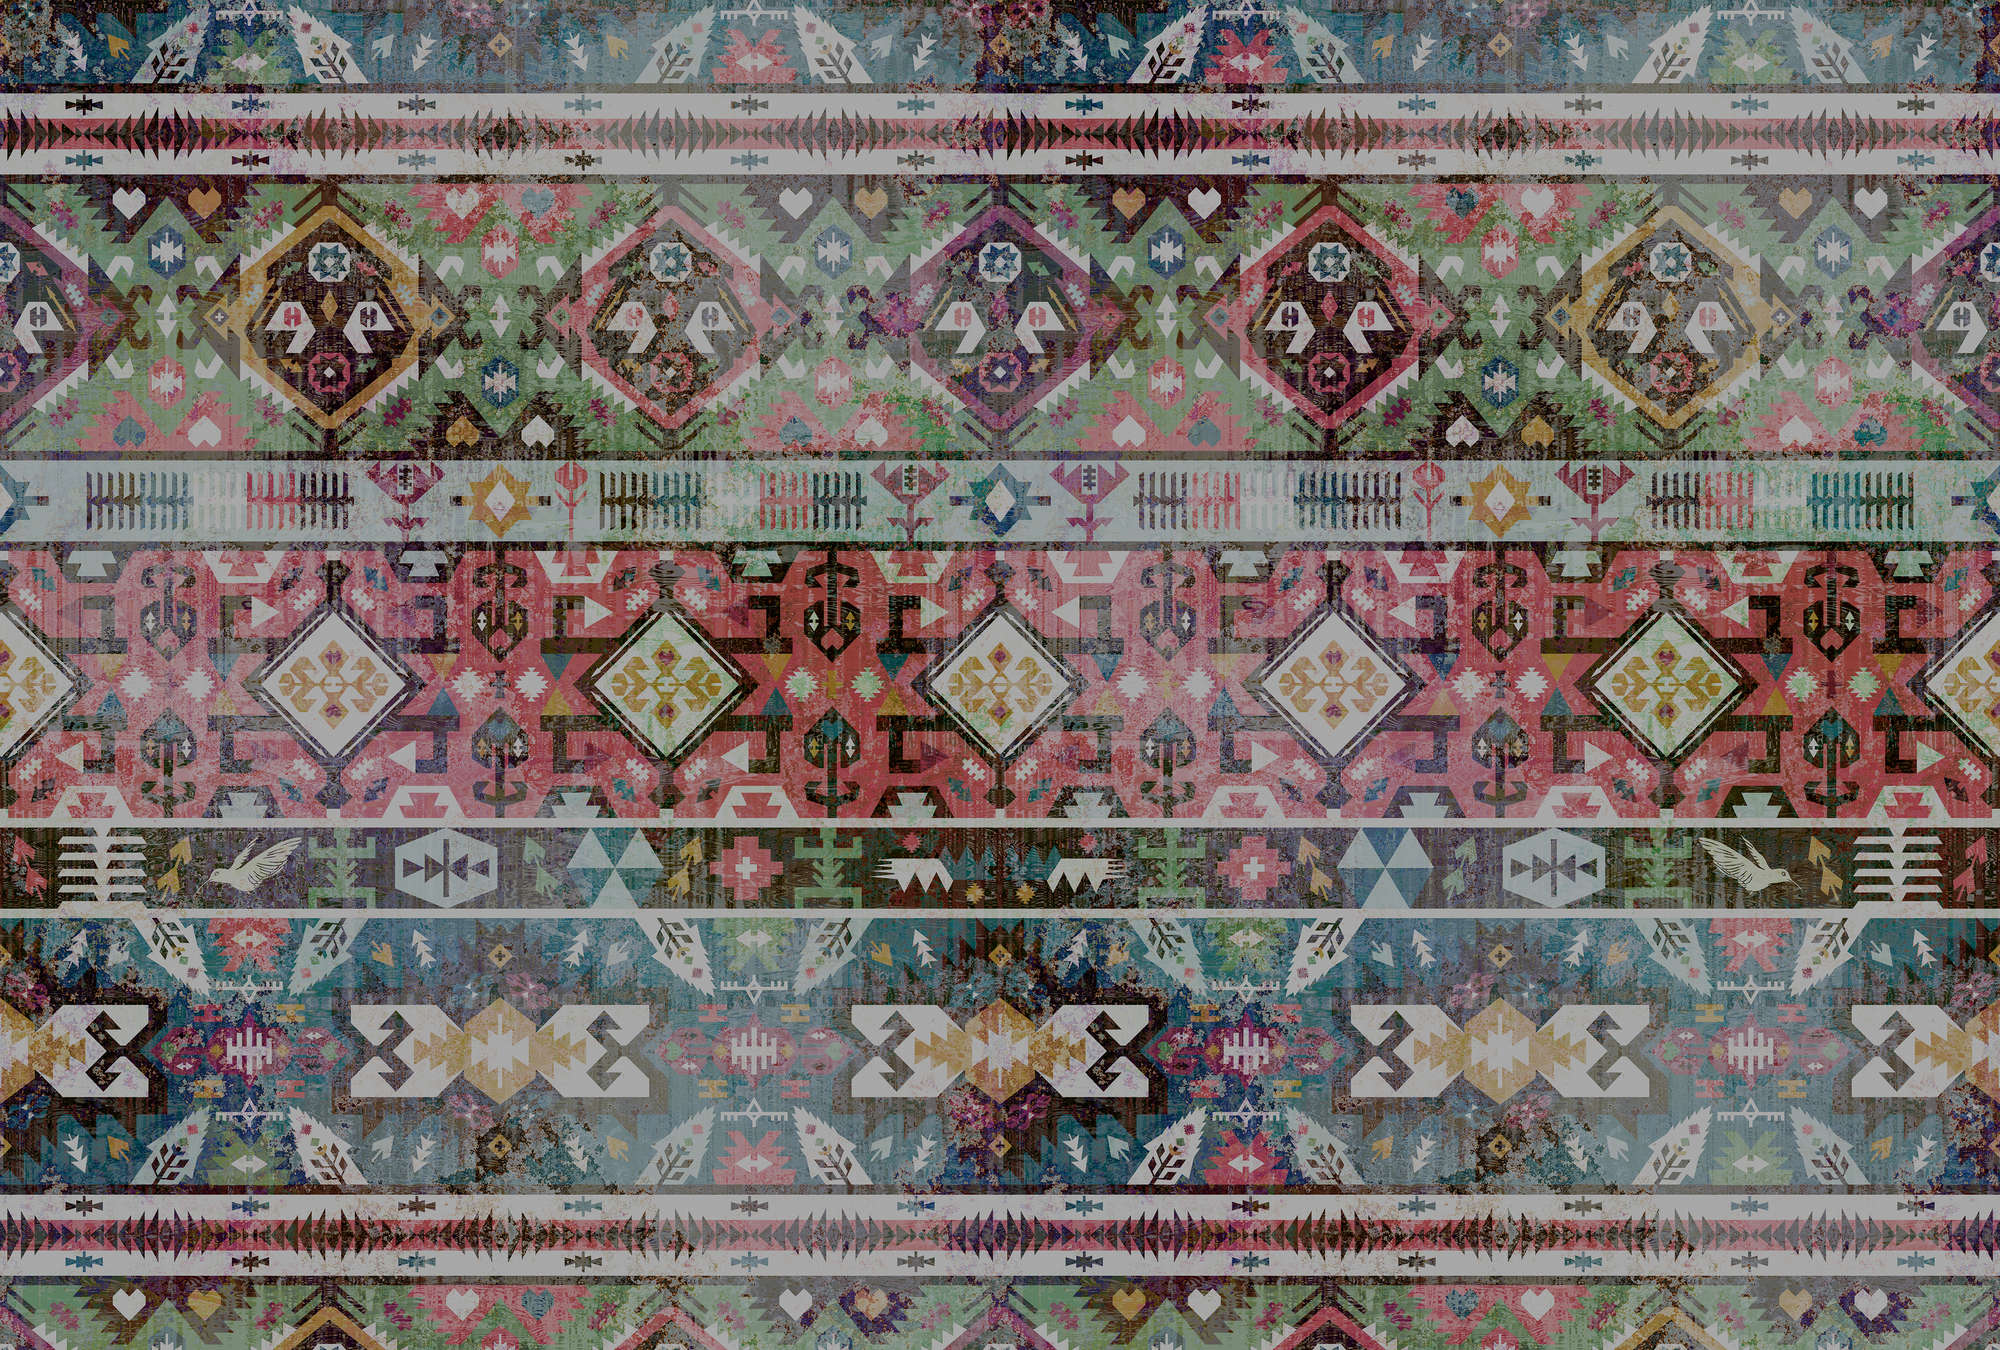             Papier peint Ethno-textile, géométrique - multicolore
        